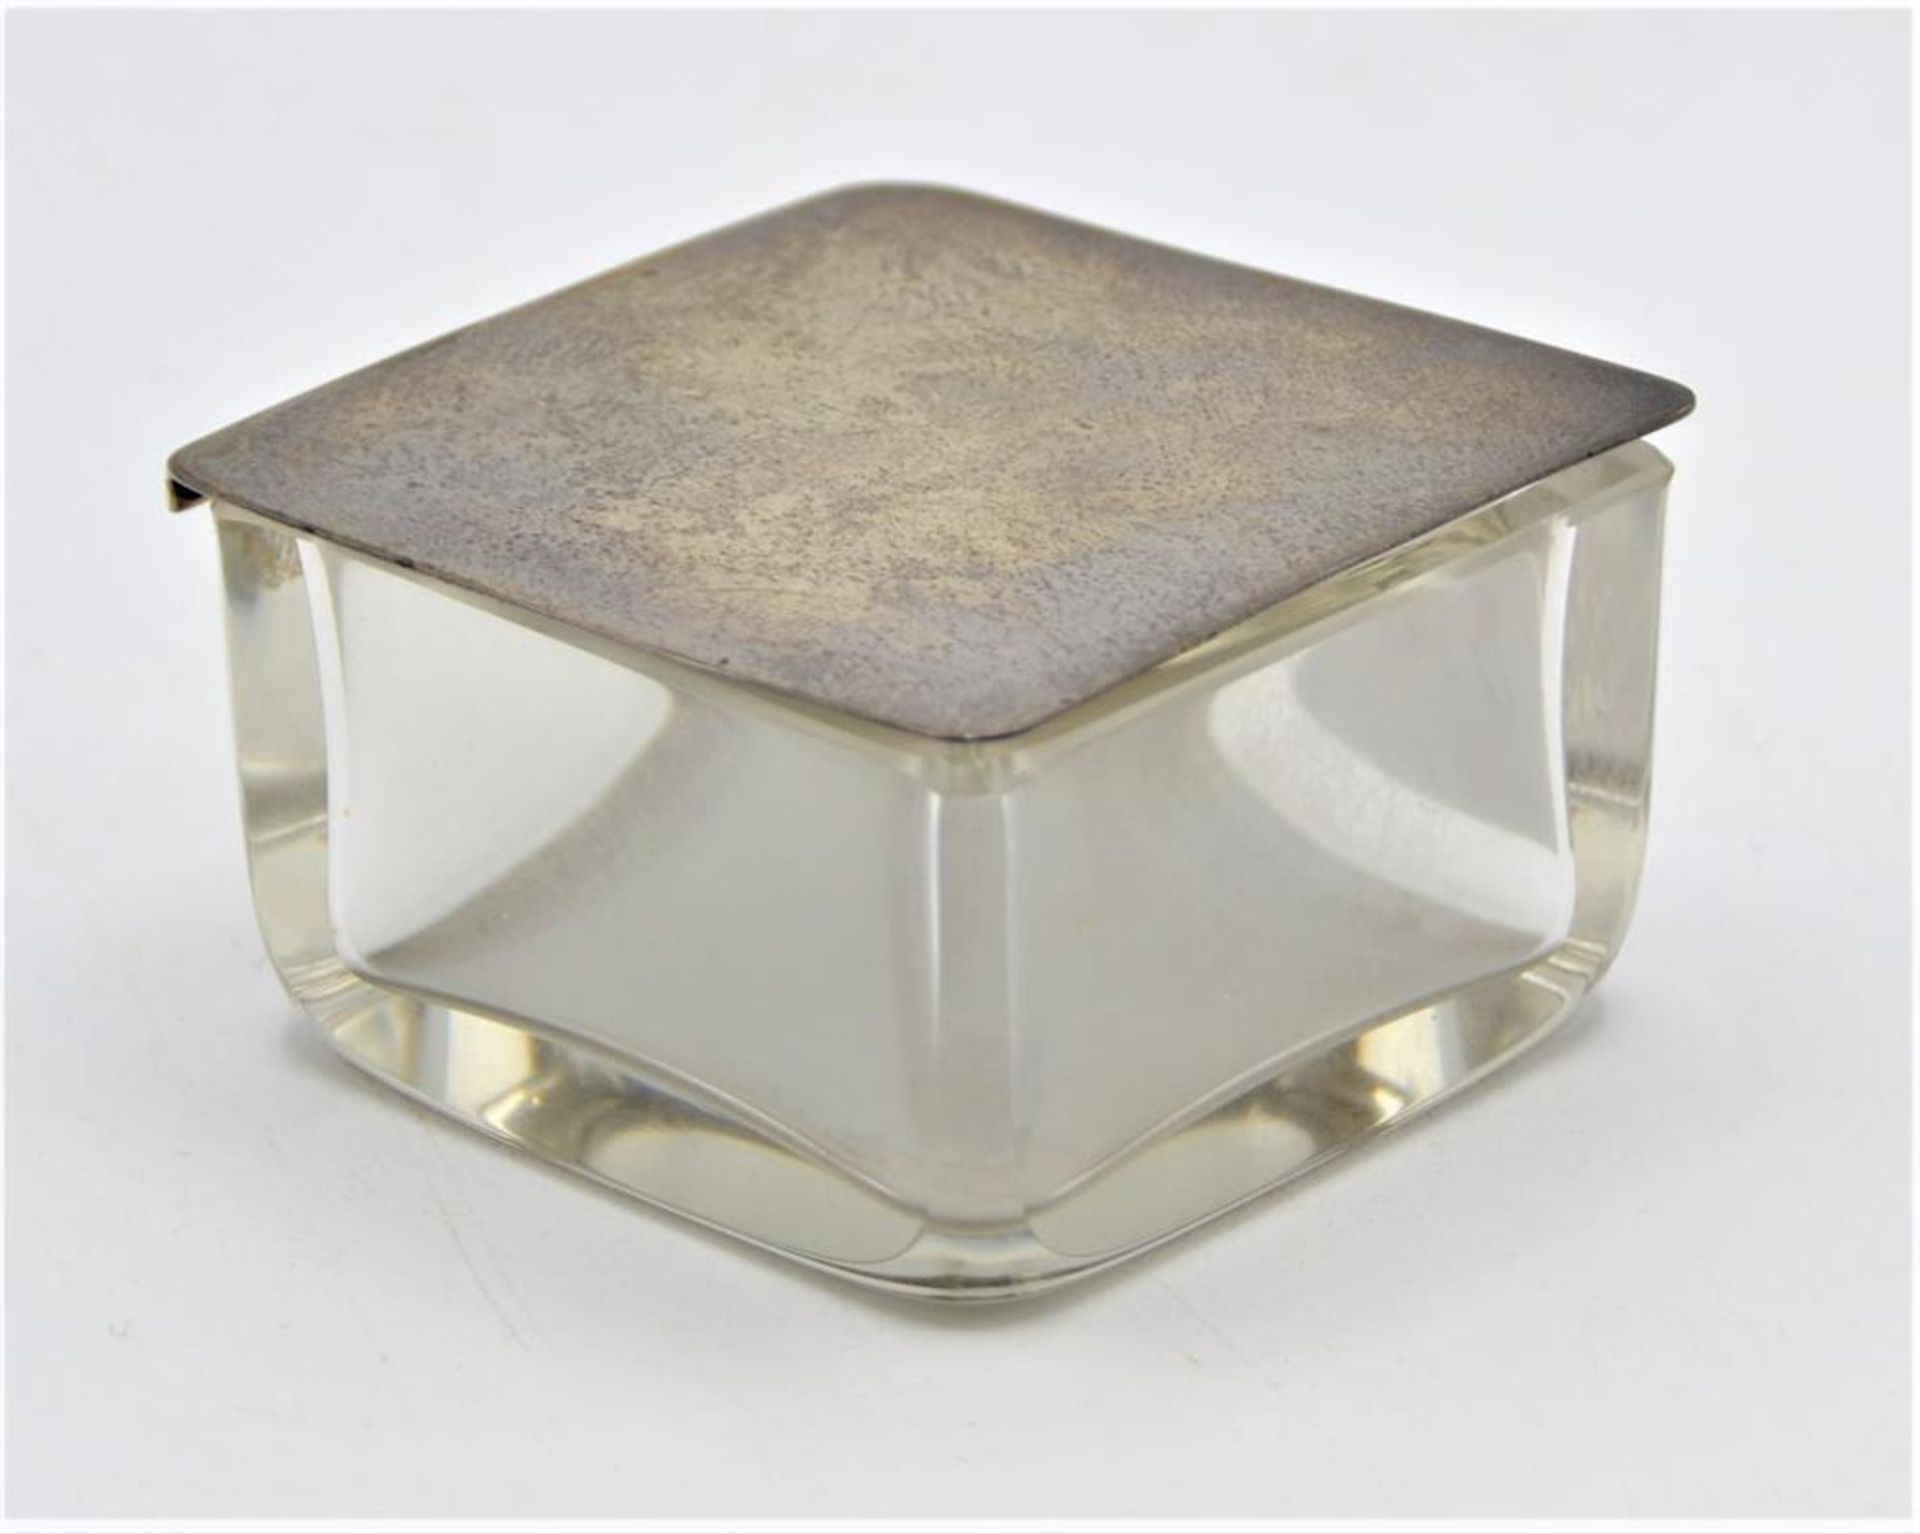 Taschenaschenbecher Reiseaschenbecher Glas mit 830 Silberdeckel bzw. Ablage f. Zigarette